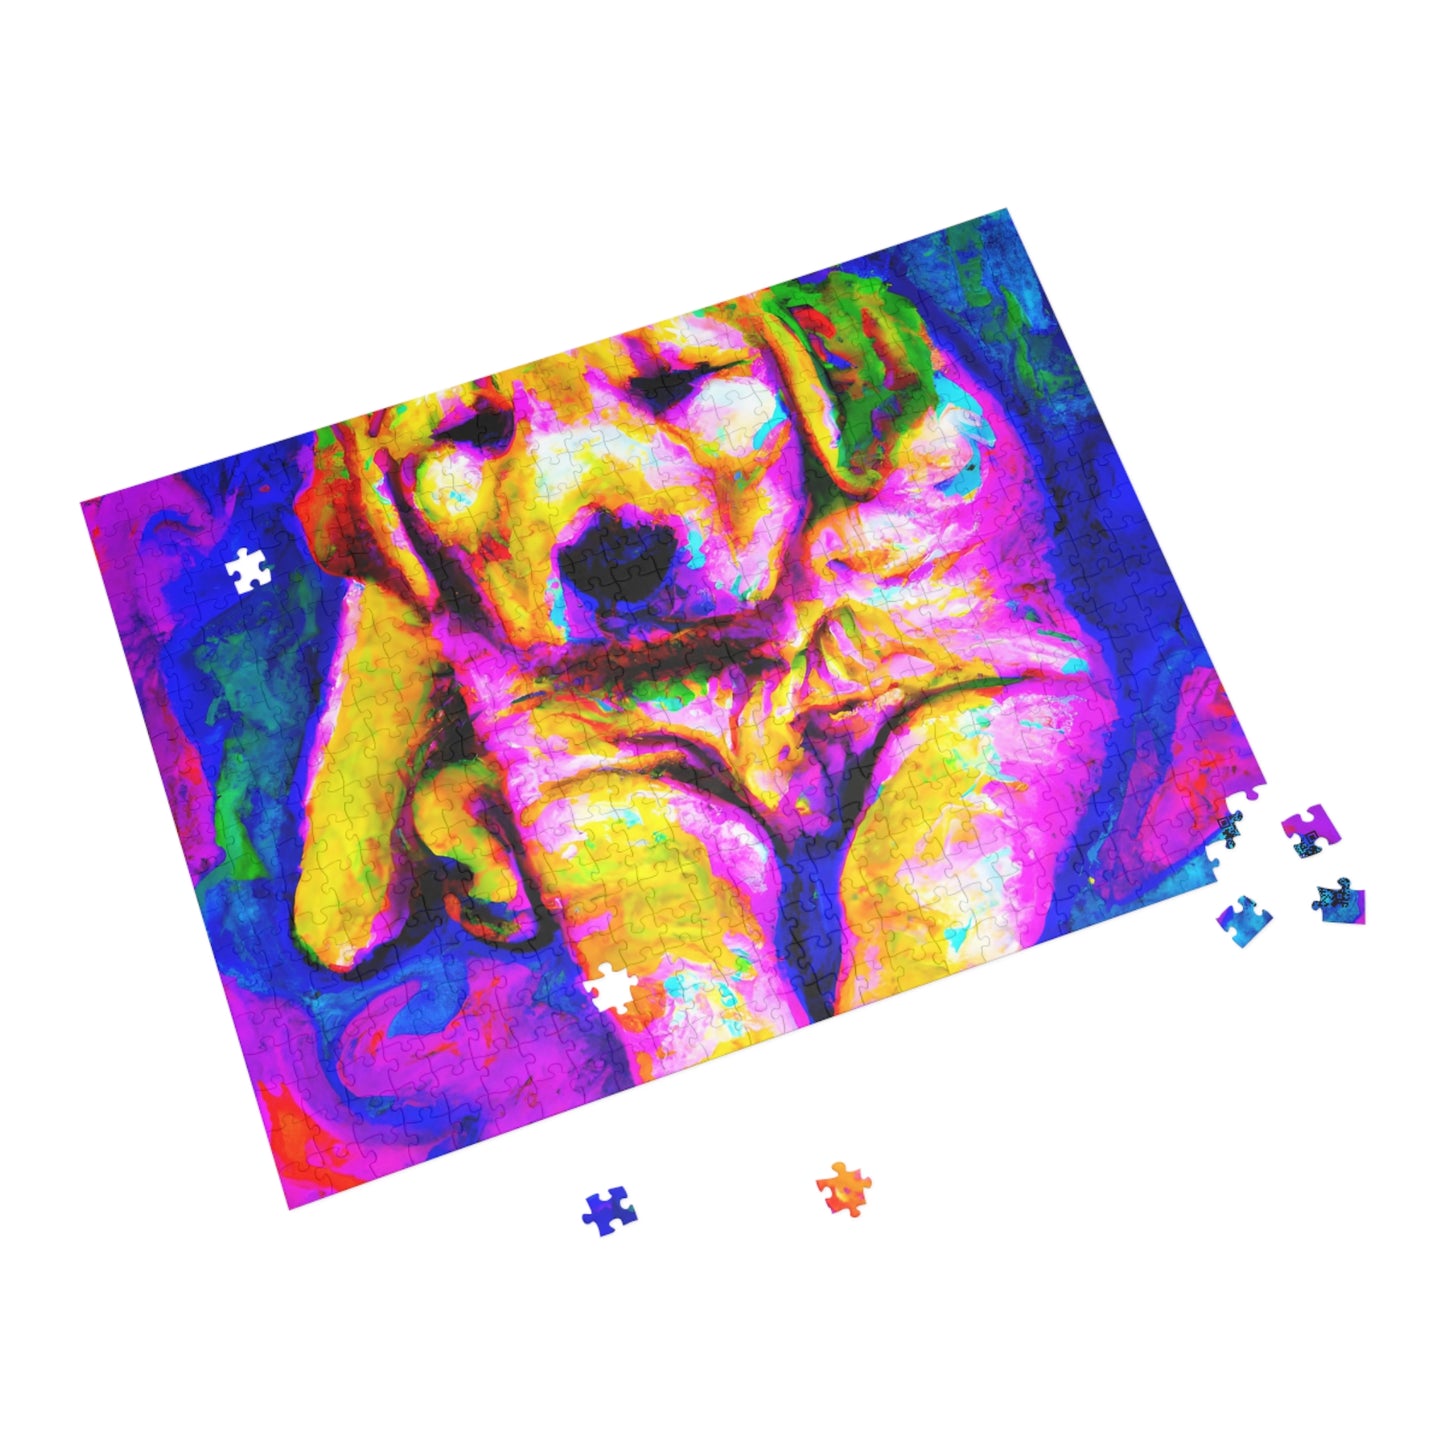 Jacques Chateaupuzzlant - Golden Retriever Puppy - Puzzle